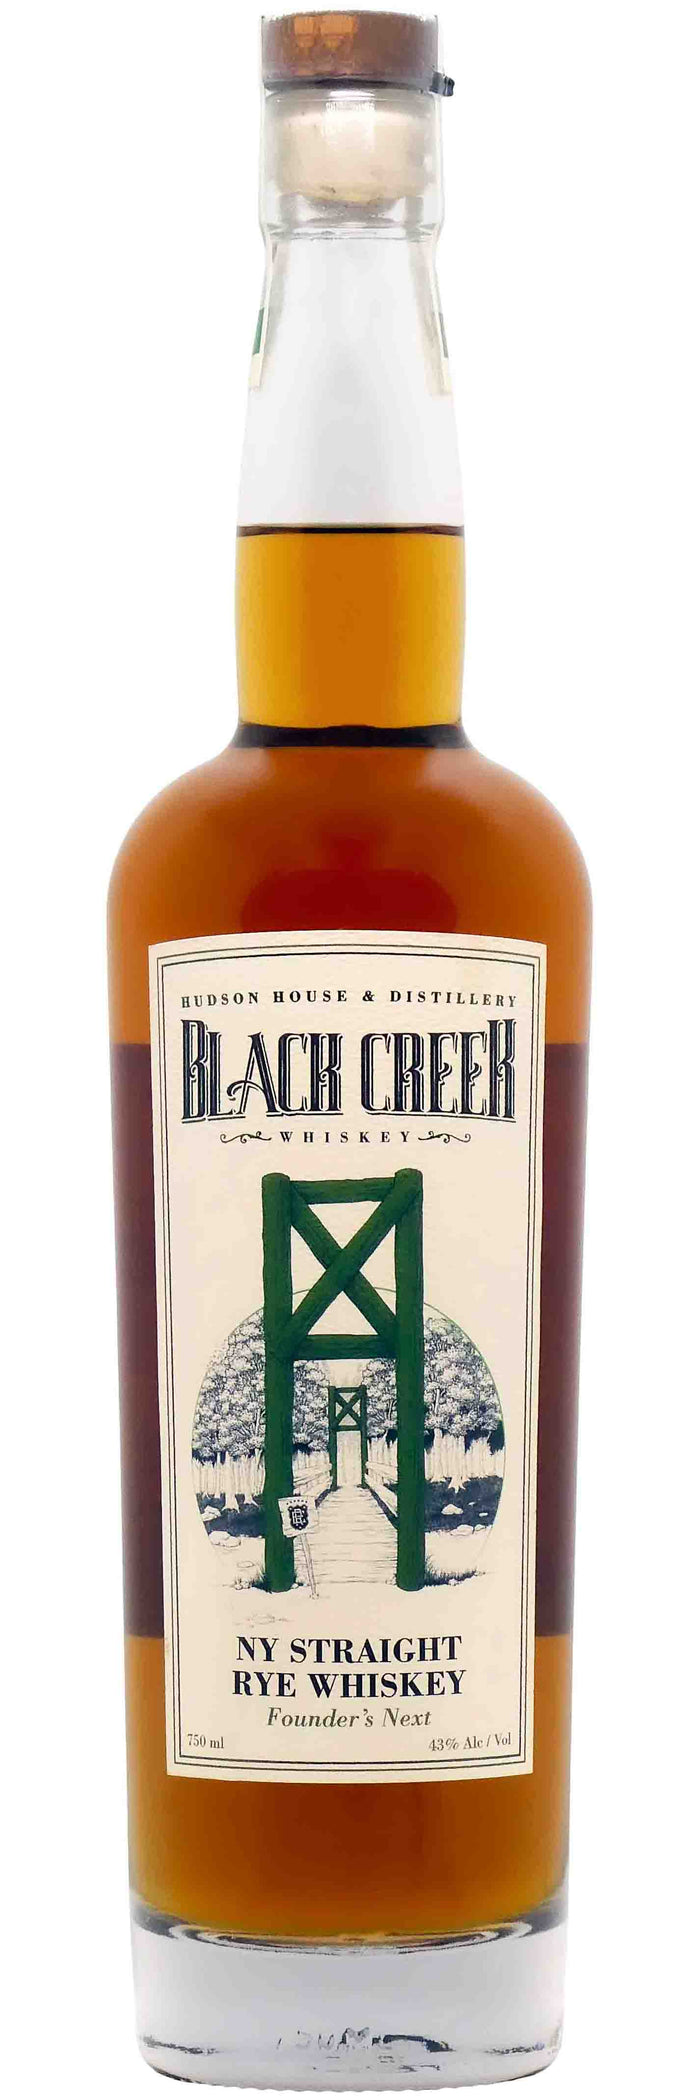 Black Creek NY Straight Rye Whiskey